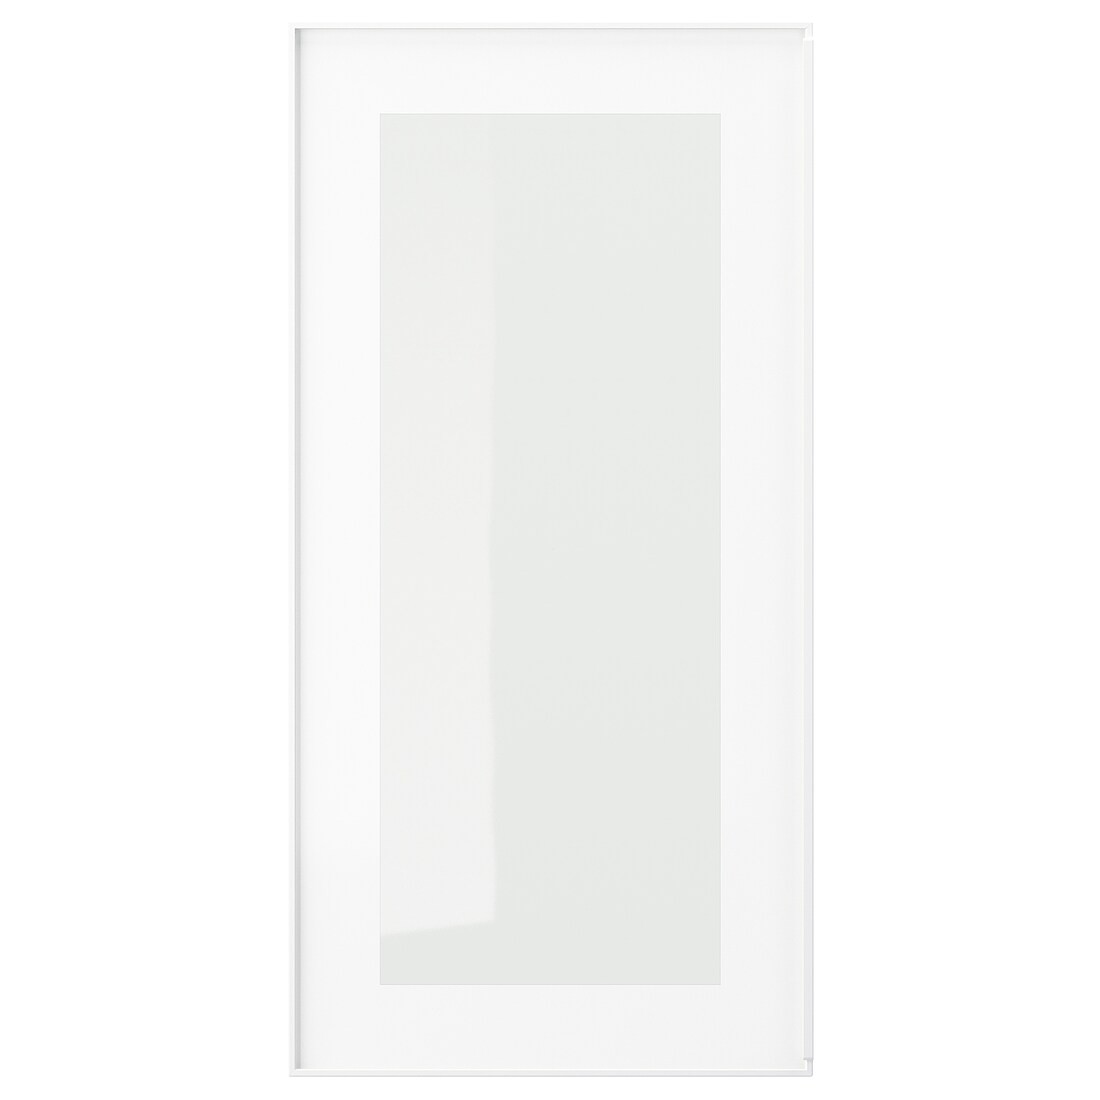 HEJSTA ХЭЙСТА Стеклянная дверь, белый / прозрачное стекло, 30x60 см